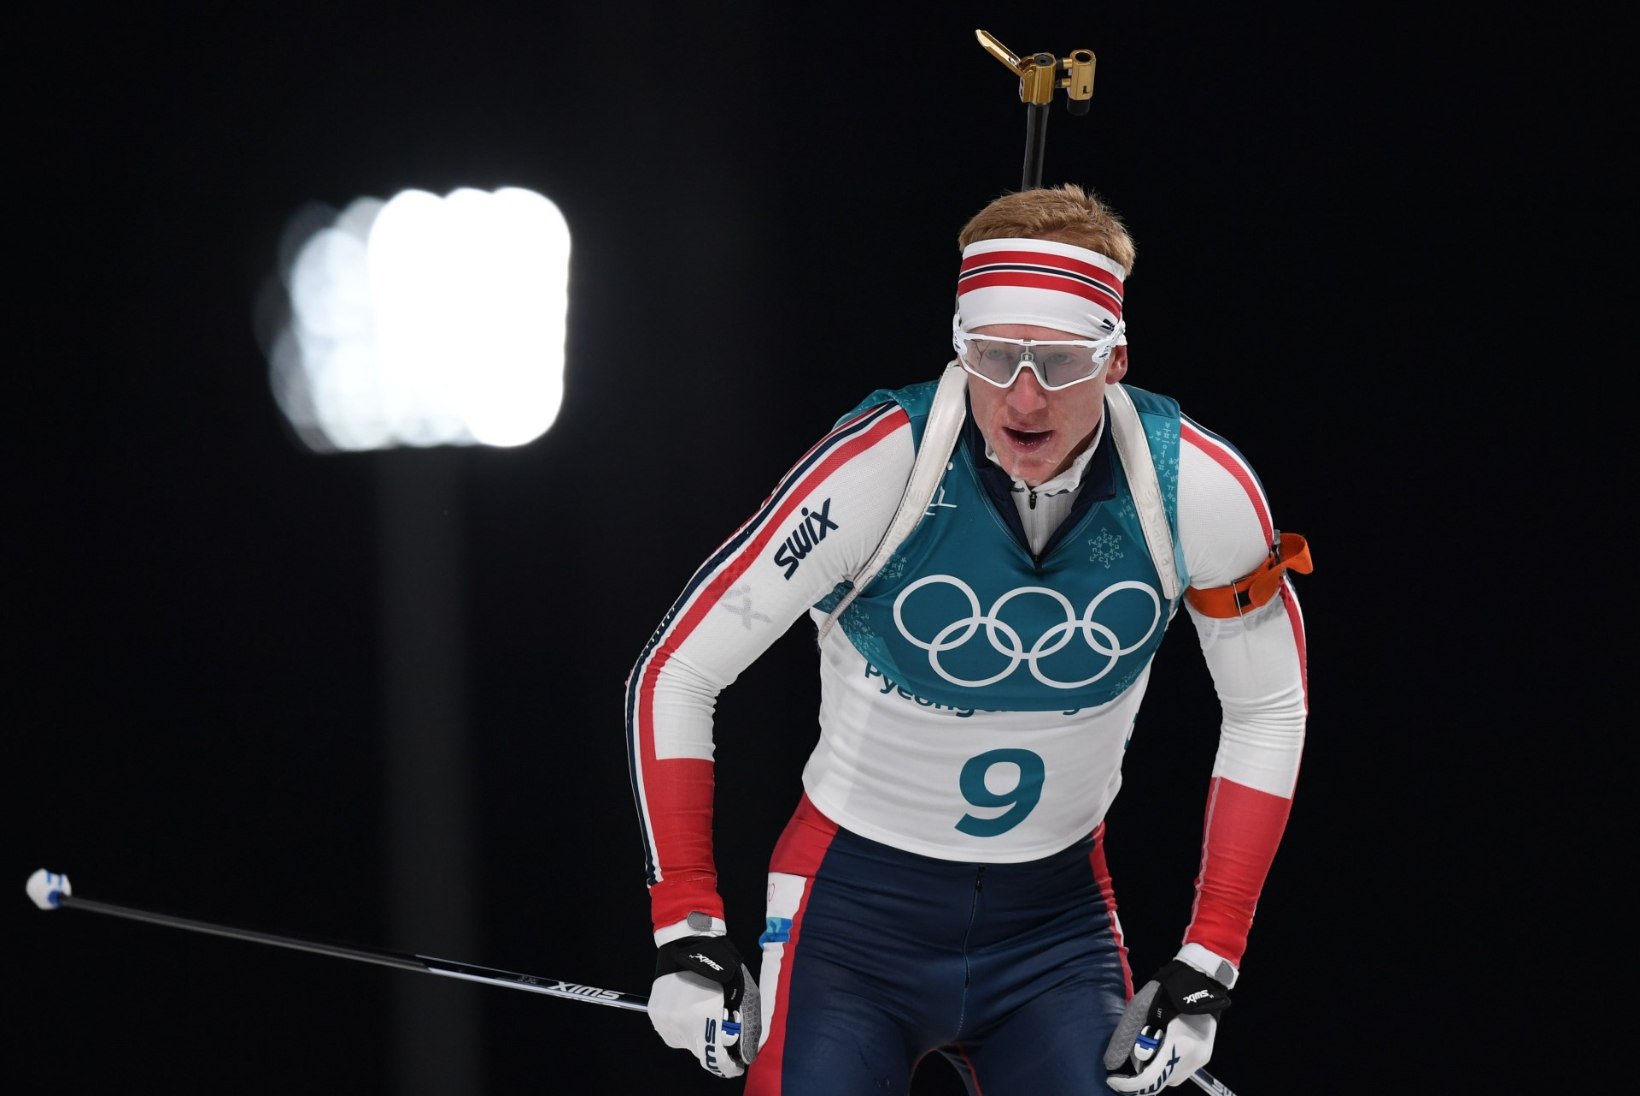 Johannes Thingnes Bö võttis ihaldatud olümpiakulla, Fourcade ja Kõiv põrusid viimases tiirus